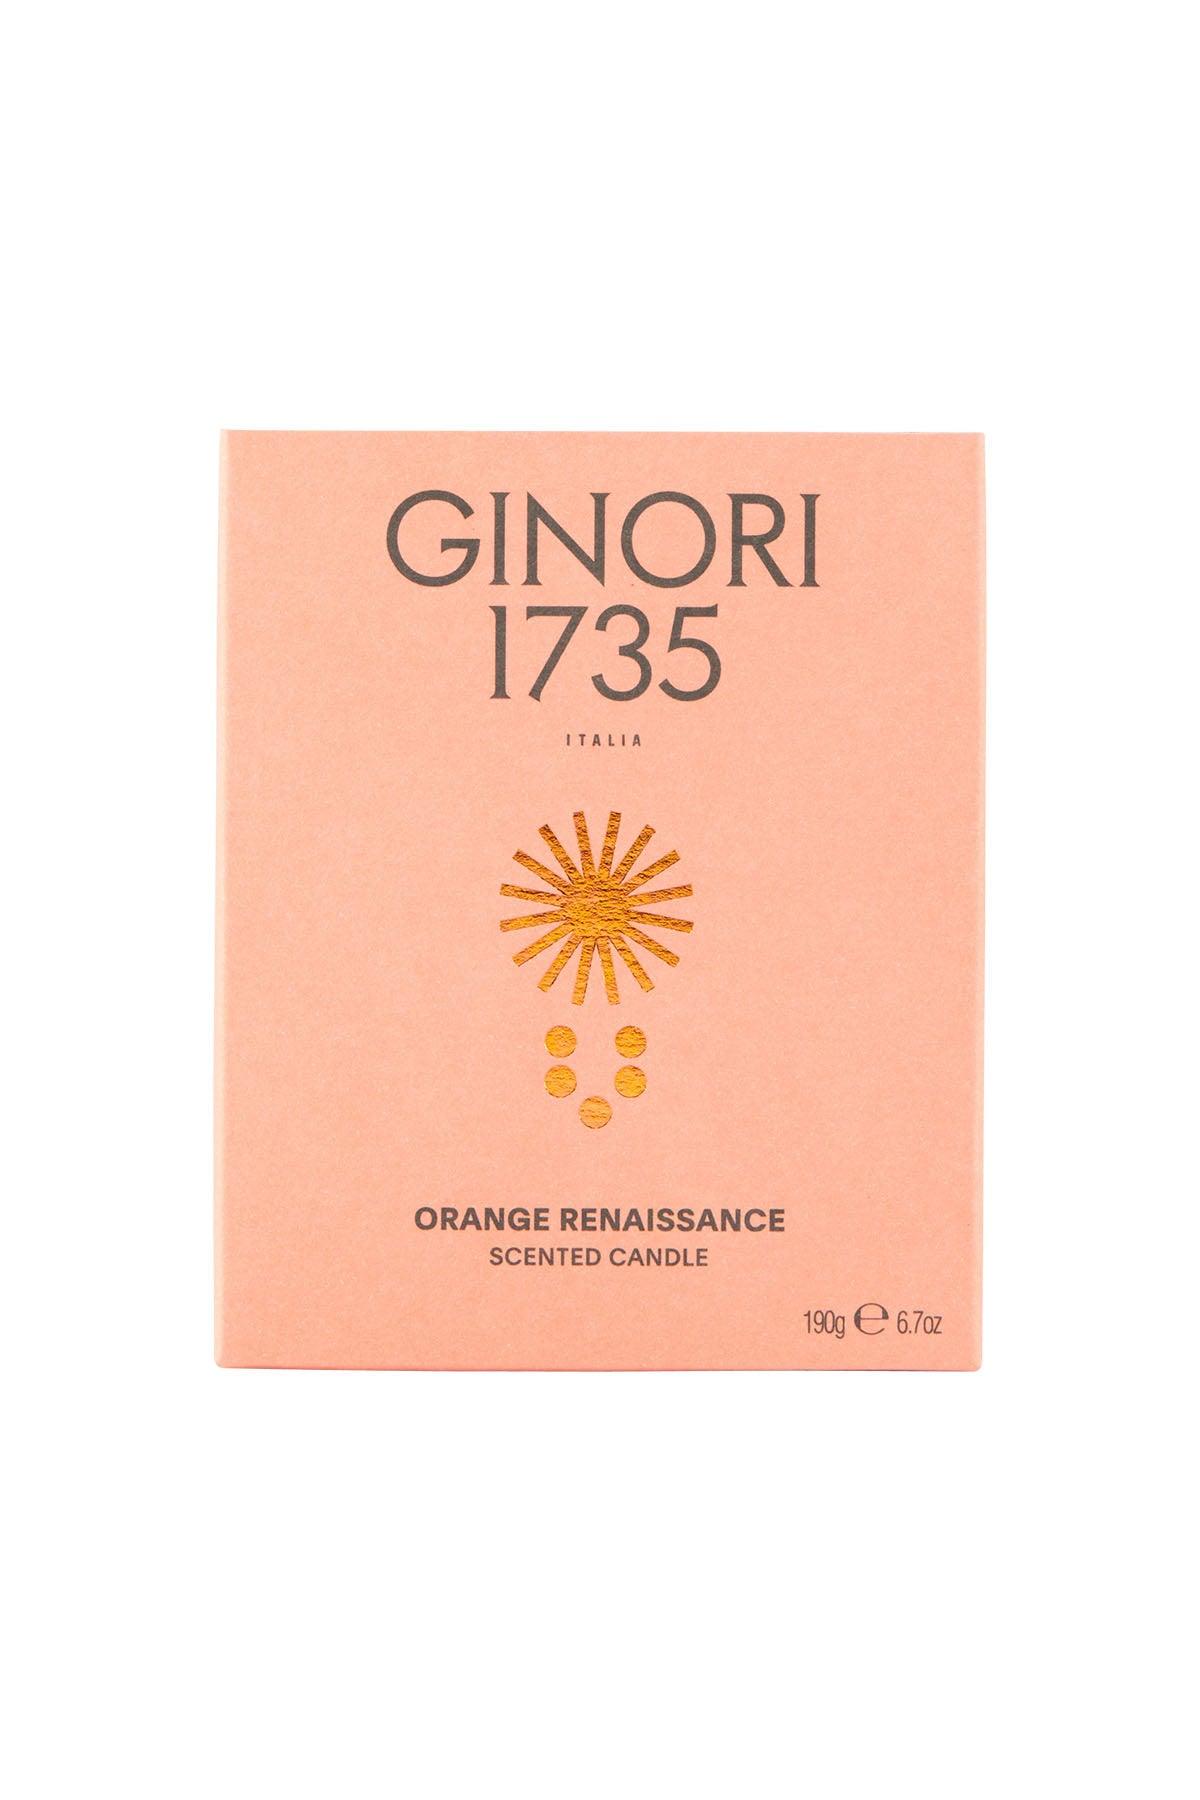 Ginori 1735 Orange Renaissance Scented Candle Refill For Il Seguace 190 Gr - JOHN JULIA